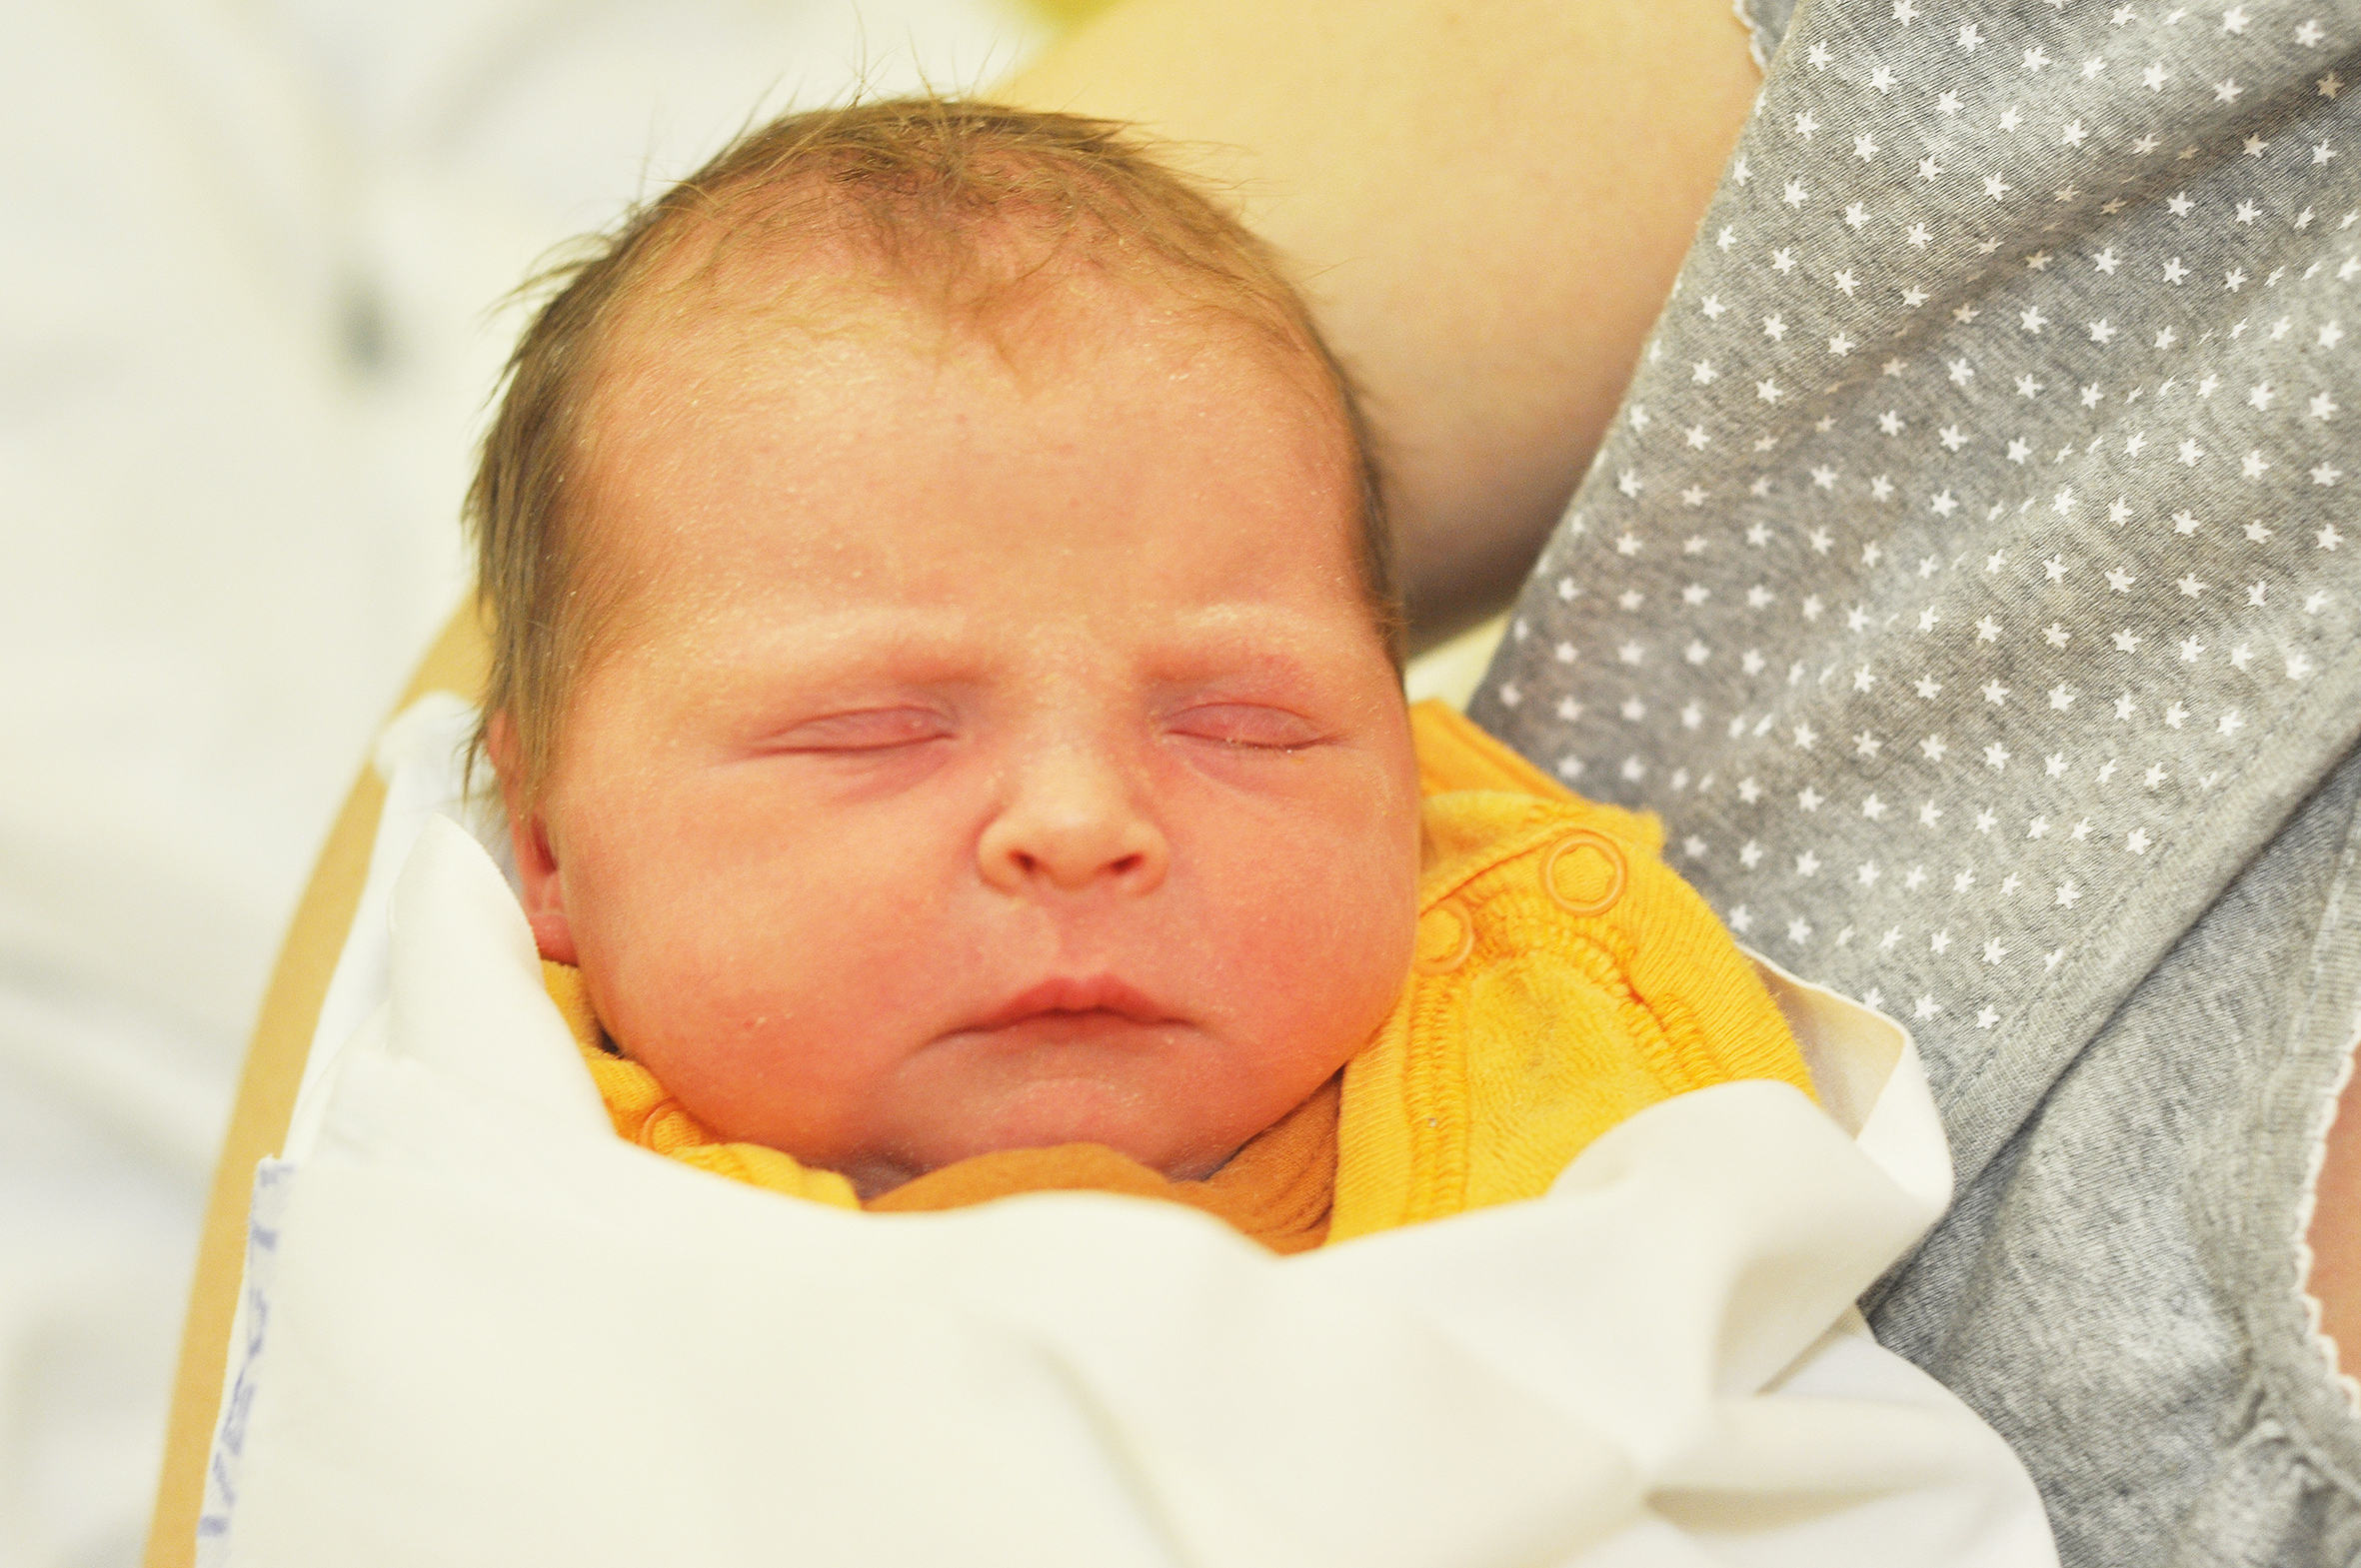 Dorota Szyfer jest nową raciborzanką. Córeczka Karoliny i Aleksandra urodziła się 20 grudnia o 0.23. Pierwsza waga wyniosła 2920 g przy długości 52 cm.